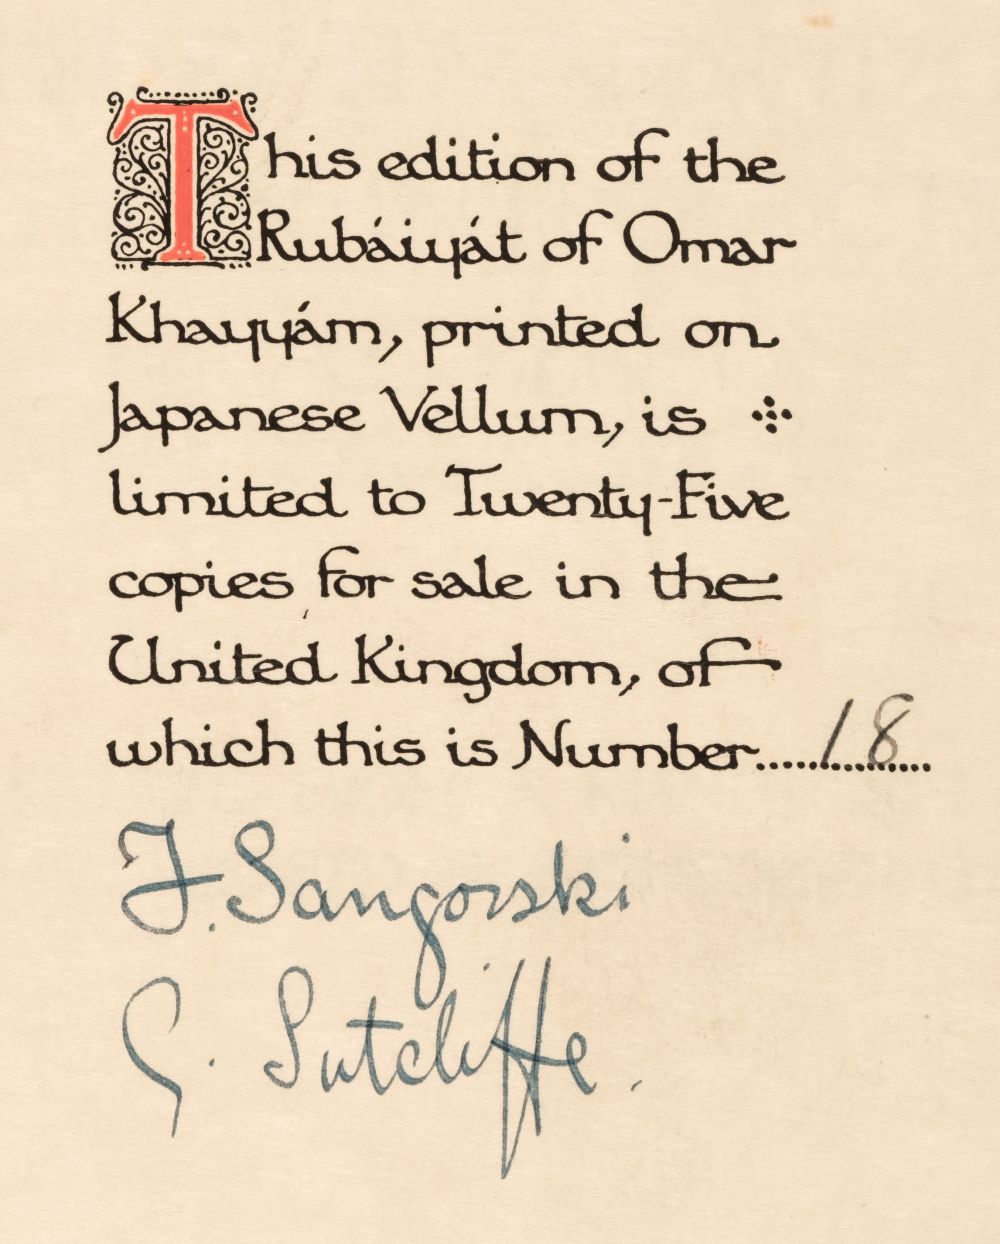 Sangorski & Sutcliffe Binding. Rubaiyat of Omar Khayyam, 1911